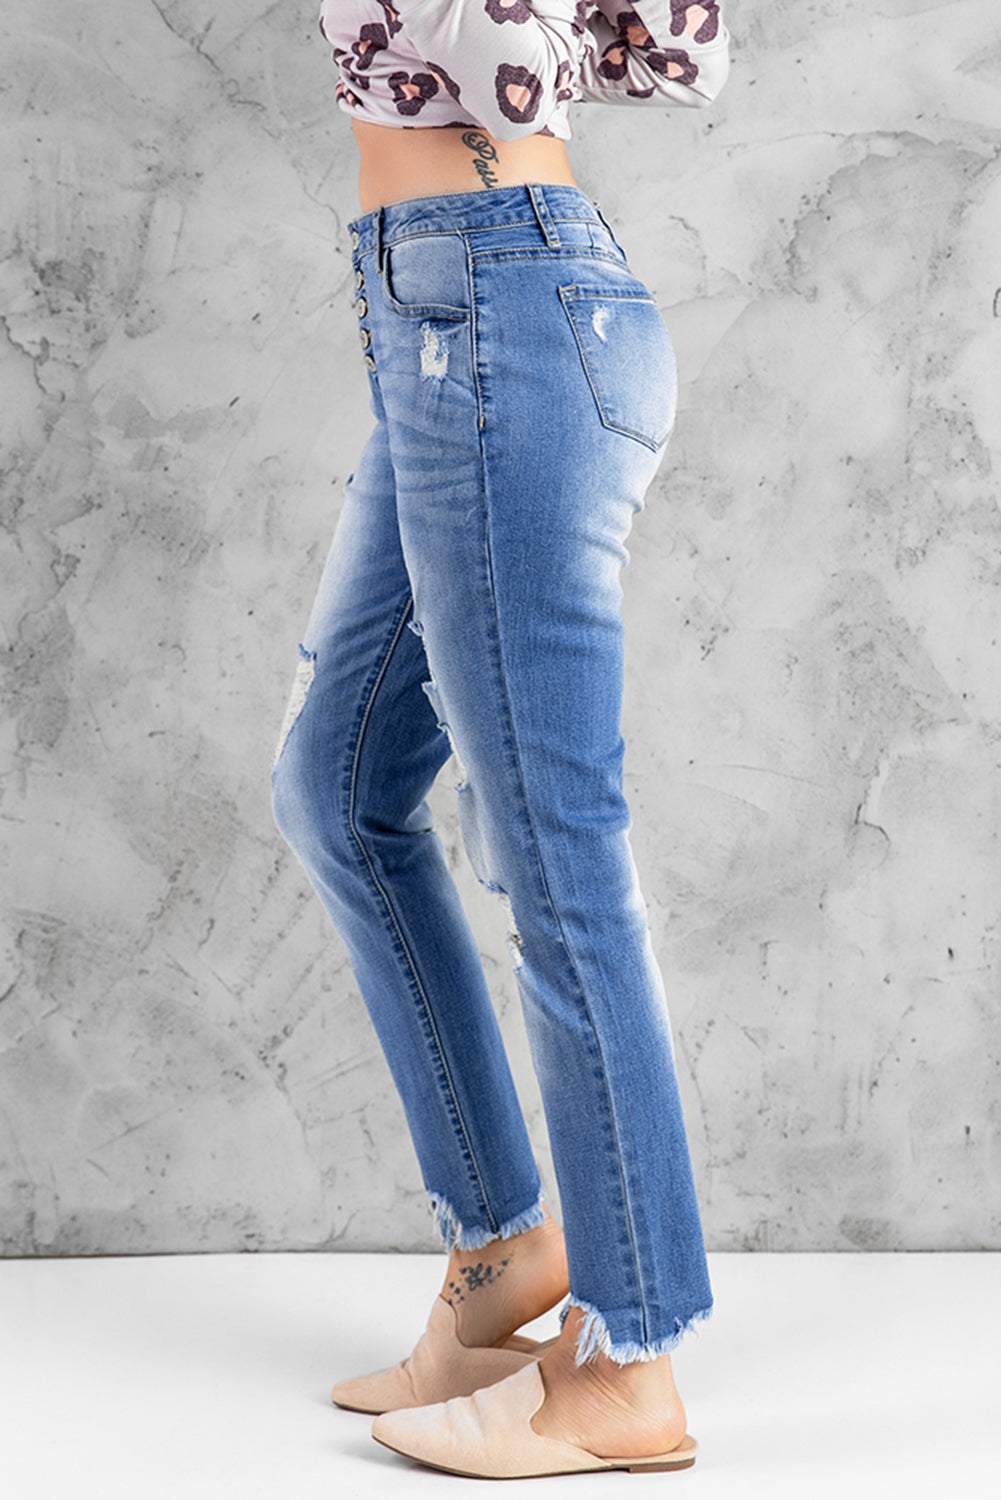 Himmelblaue Skinny-Jeans mit hohem Bund und Knopfleiste vorne und ausgefransten Knöcheln